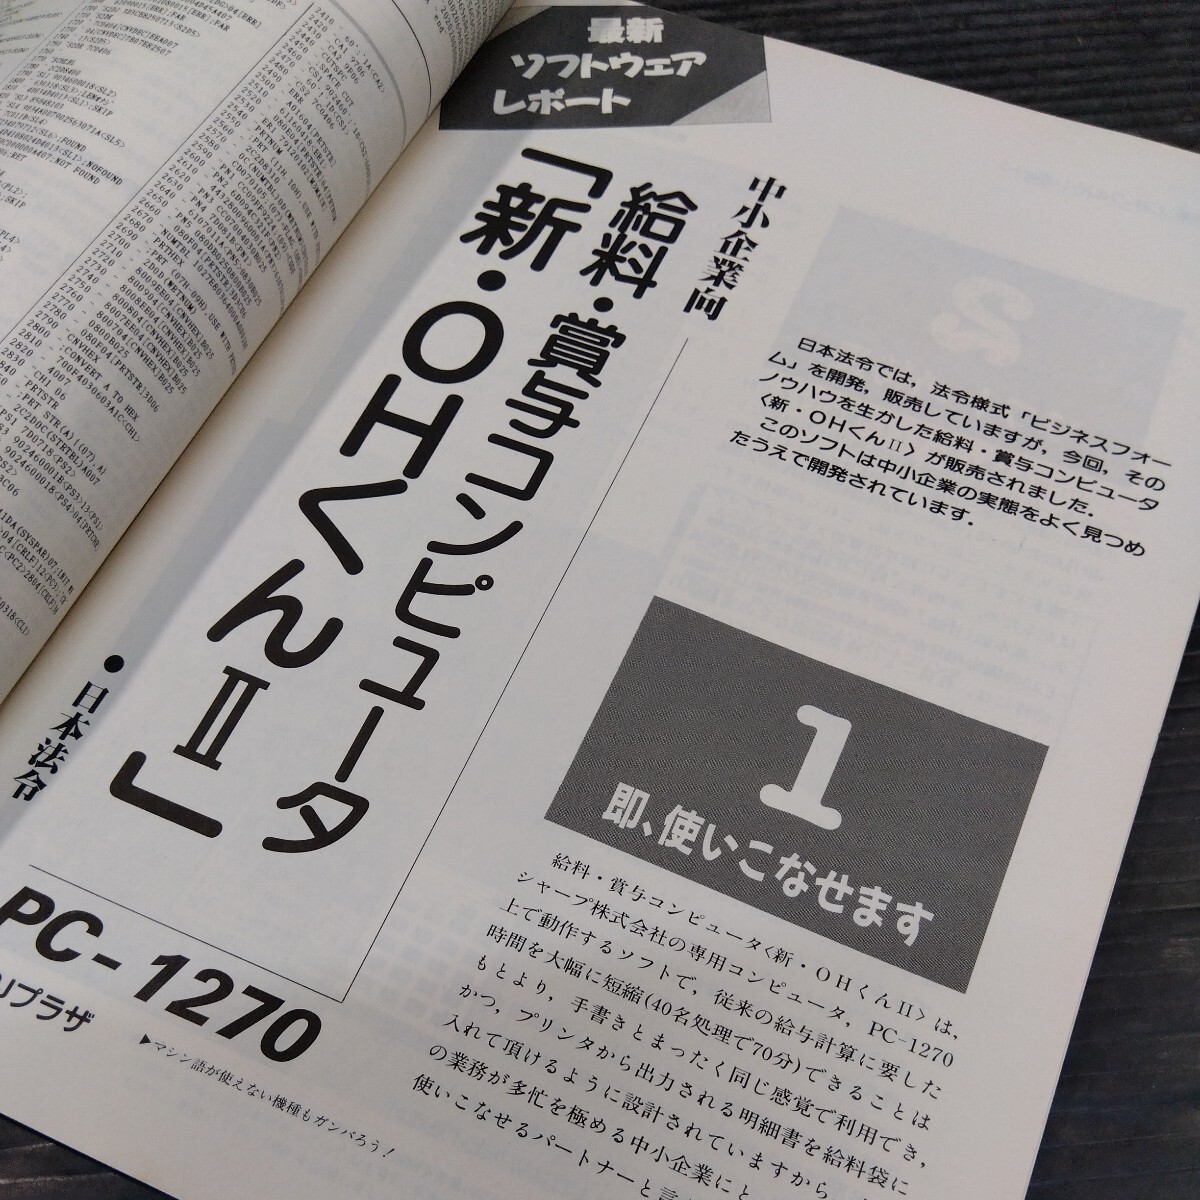 PC журнал PJ карманный компьютер * journal I/O больше . I *o- компьютер журнал Showa 63 год 64 год эпоха Heisei изначальный год 7 шт. комплект не комплект 